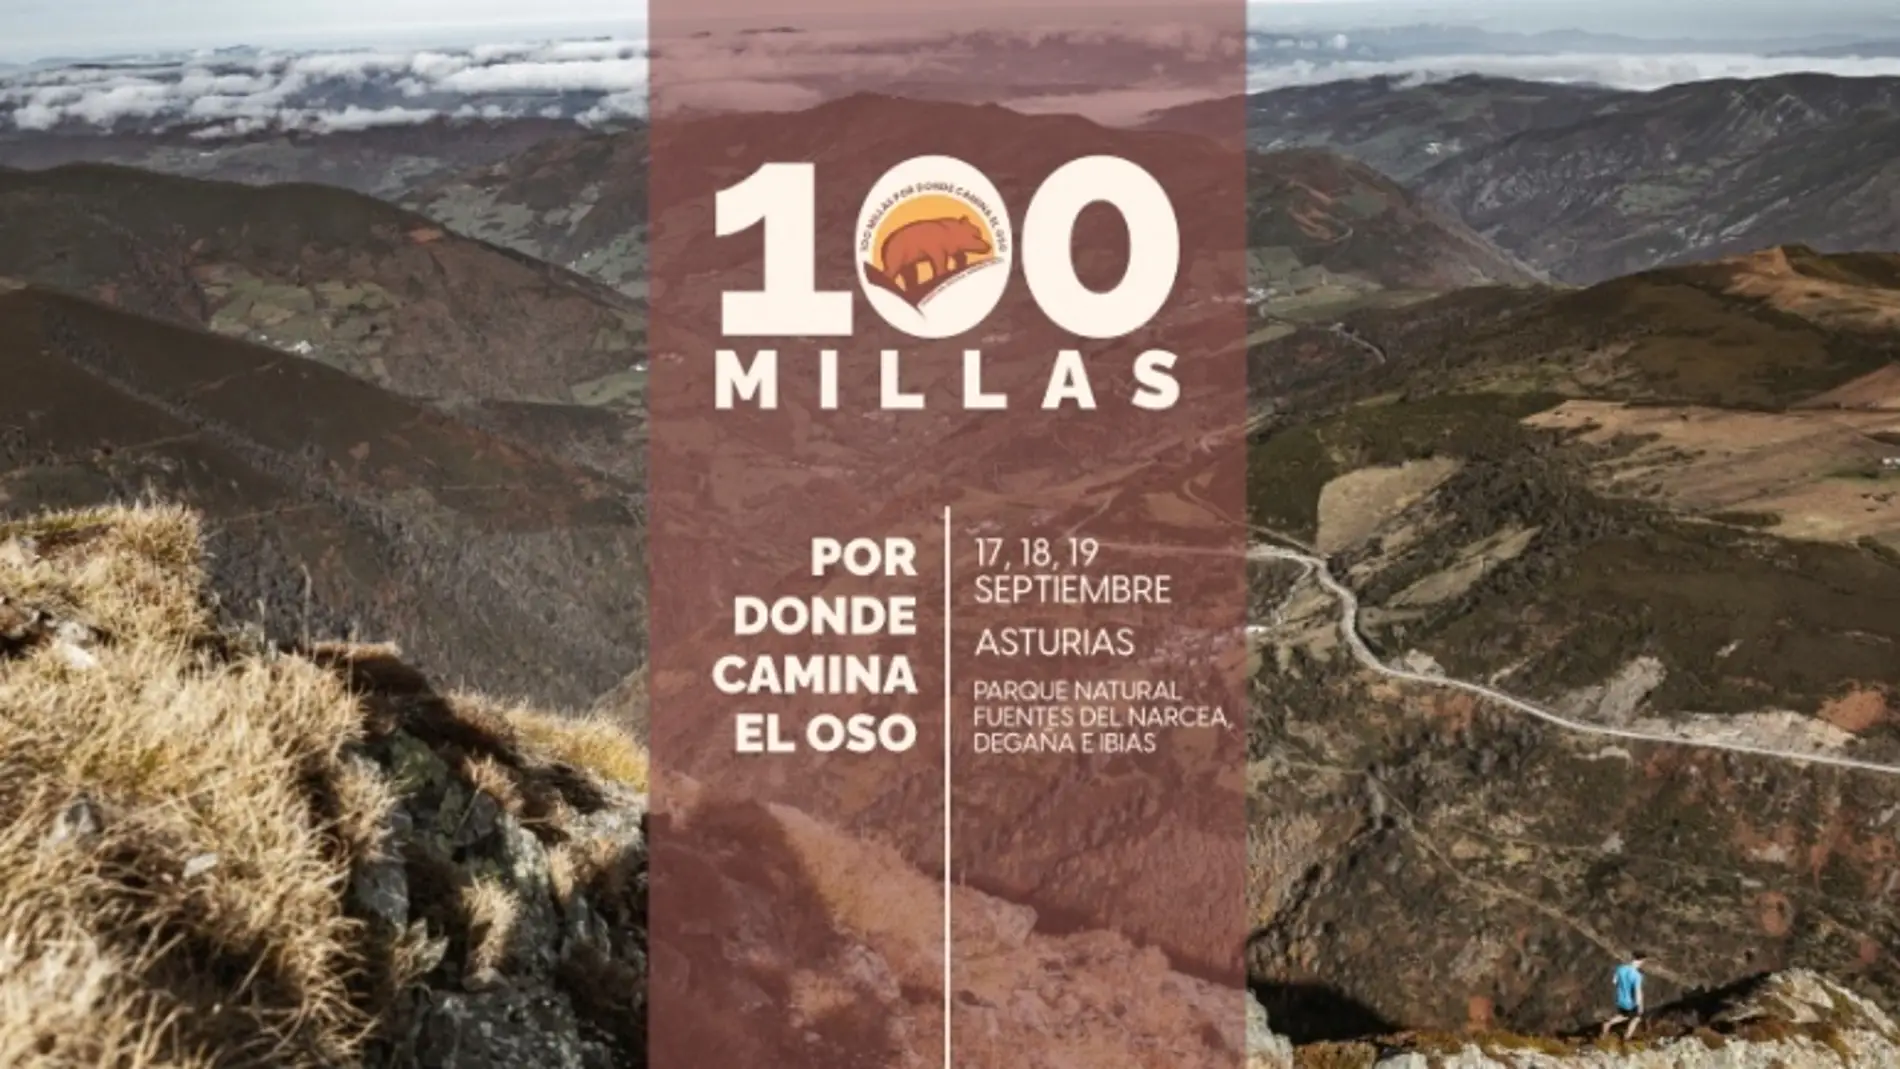 Las «100 millas por donde camina el oso» albergará el Campeonato de Asturias de Larga Distancia 